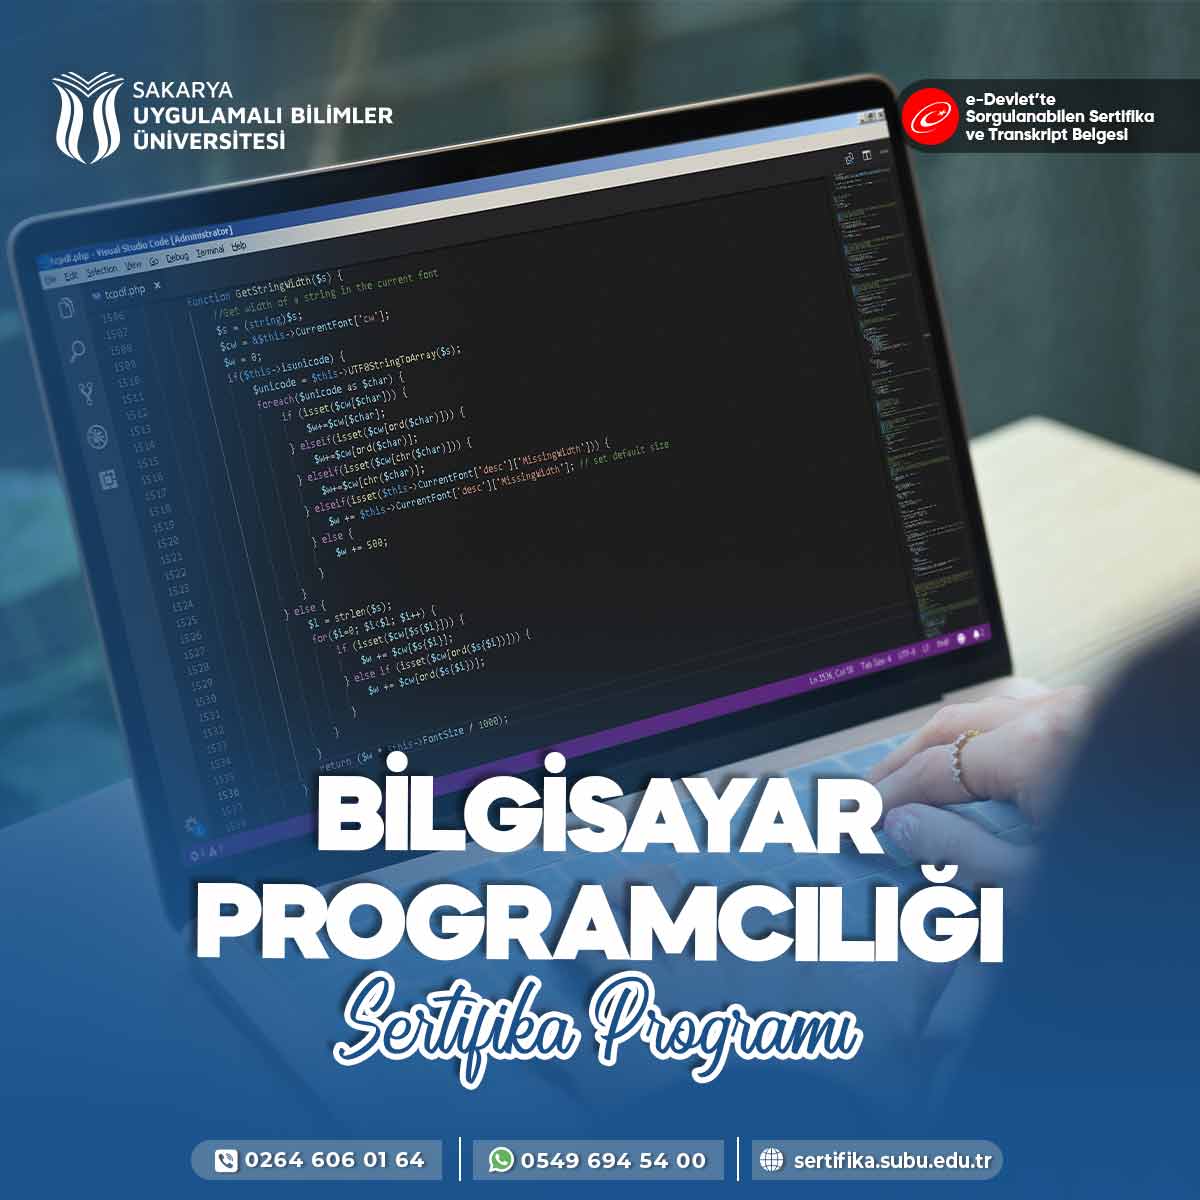 Bilgisayar Programcılığı Sertifika Programı